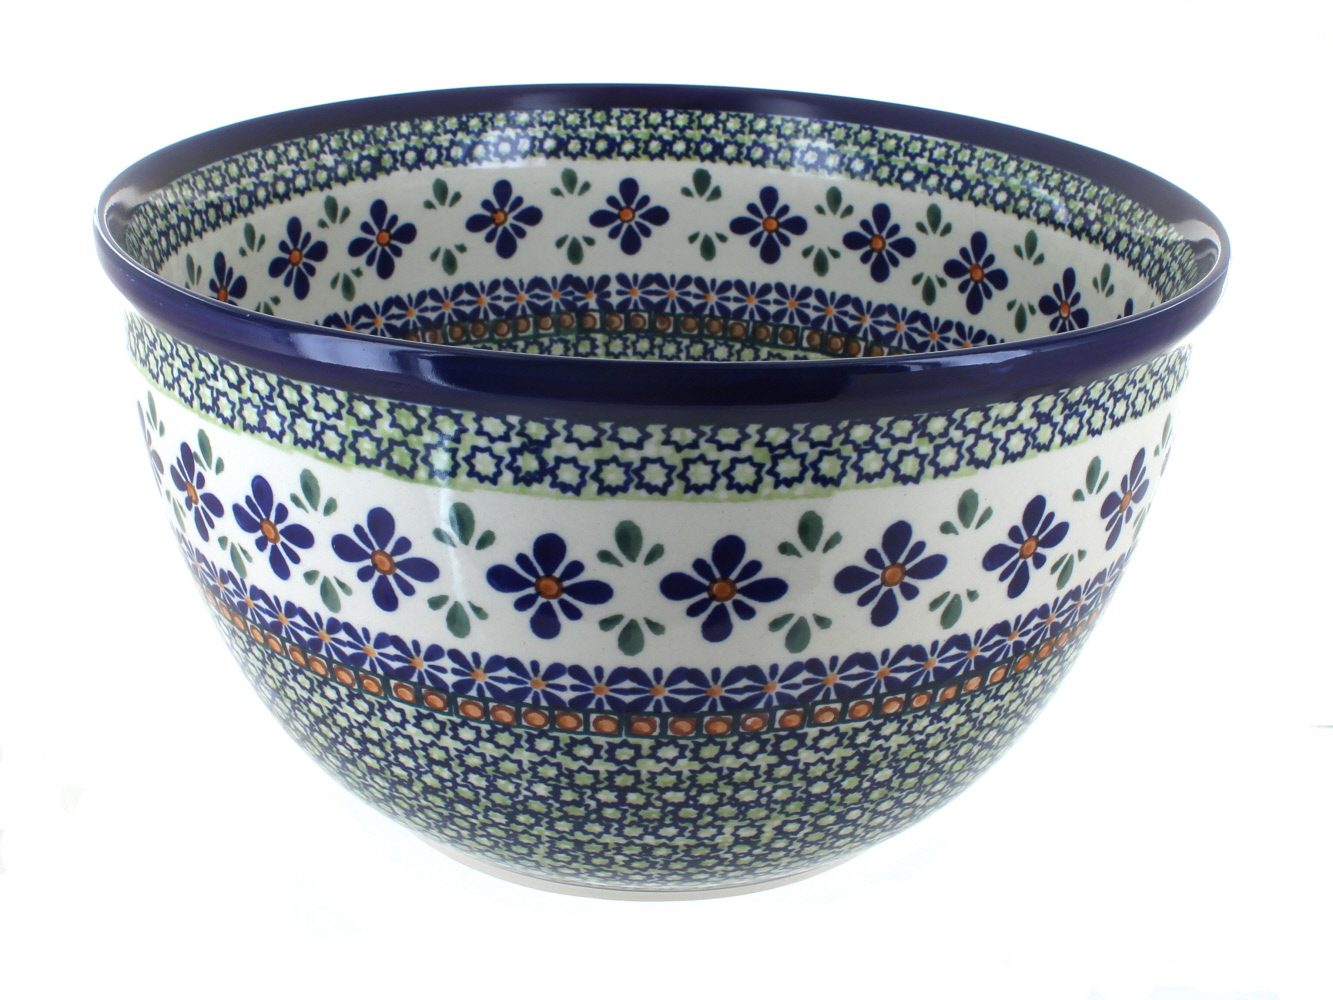 Zaklady Mosaic Flower Large Mixing Bowl Polish Pottery